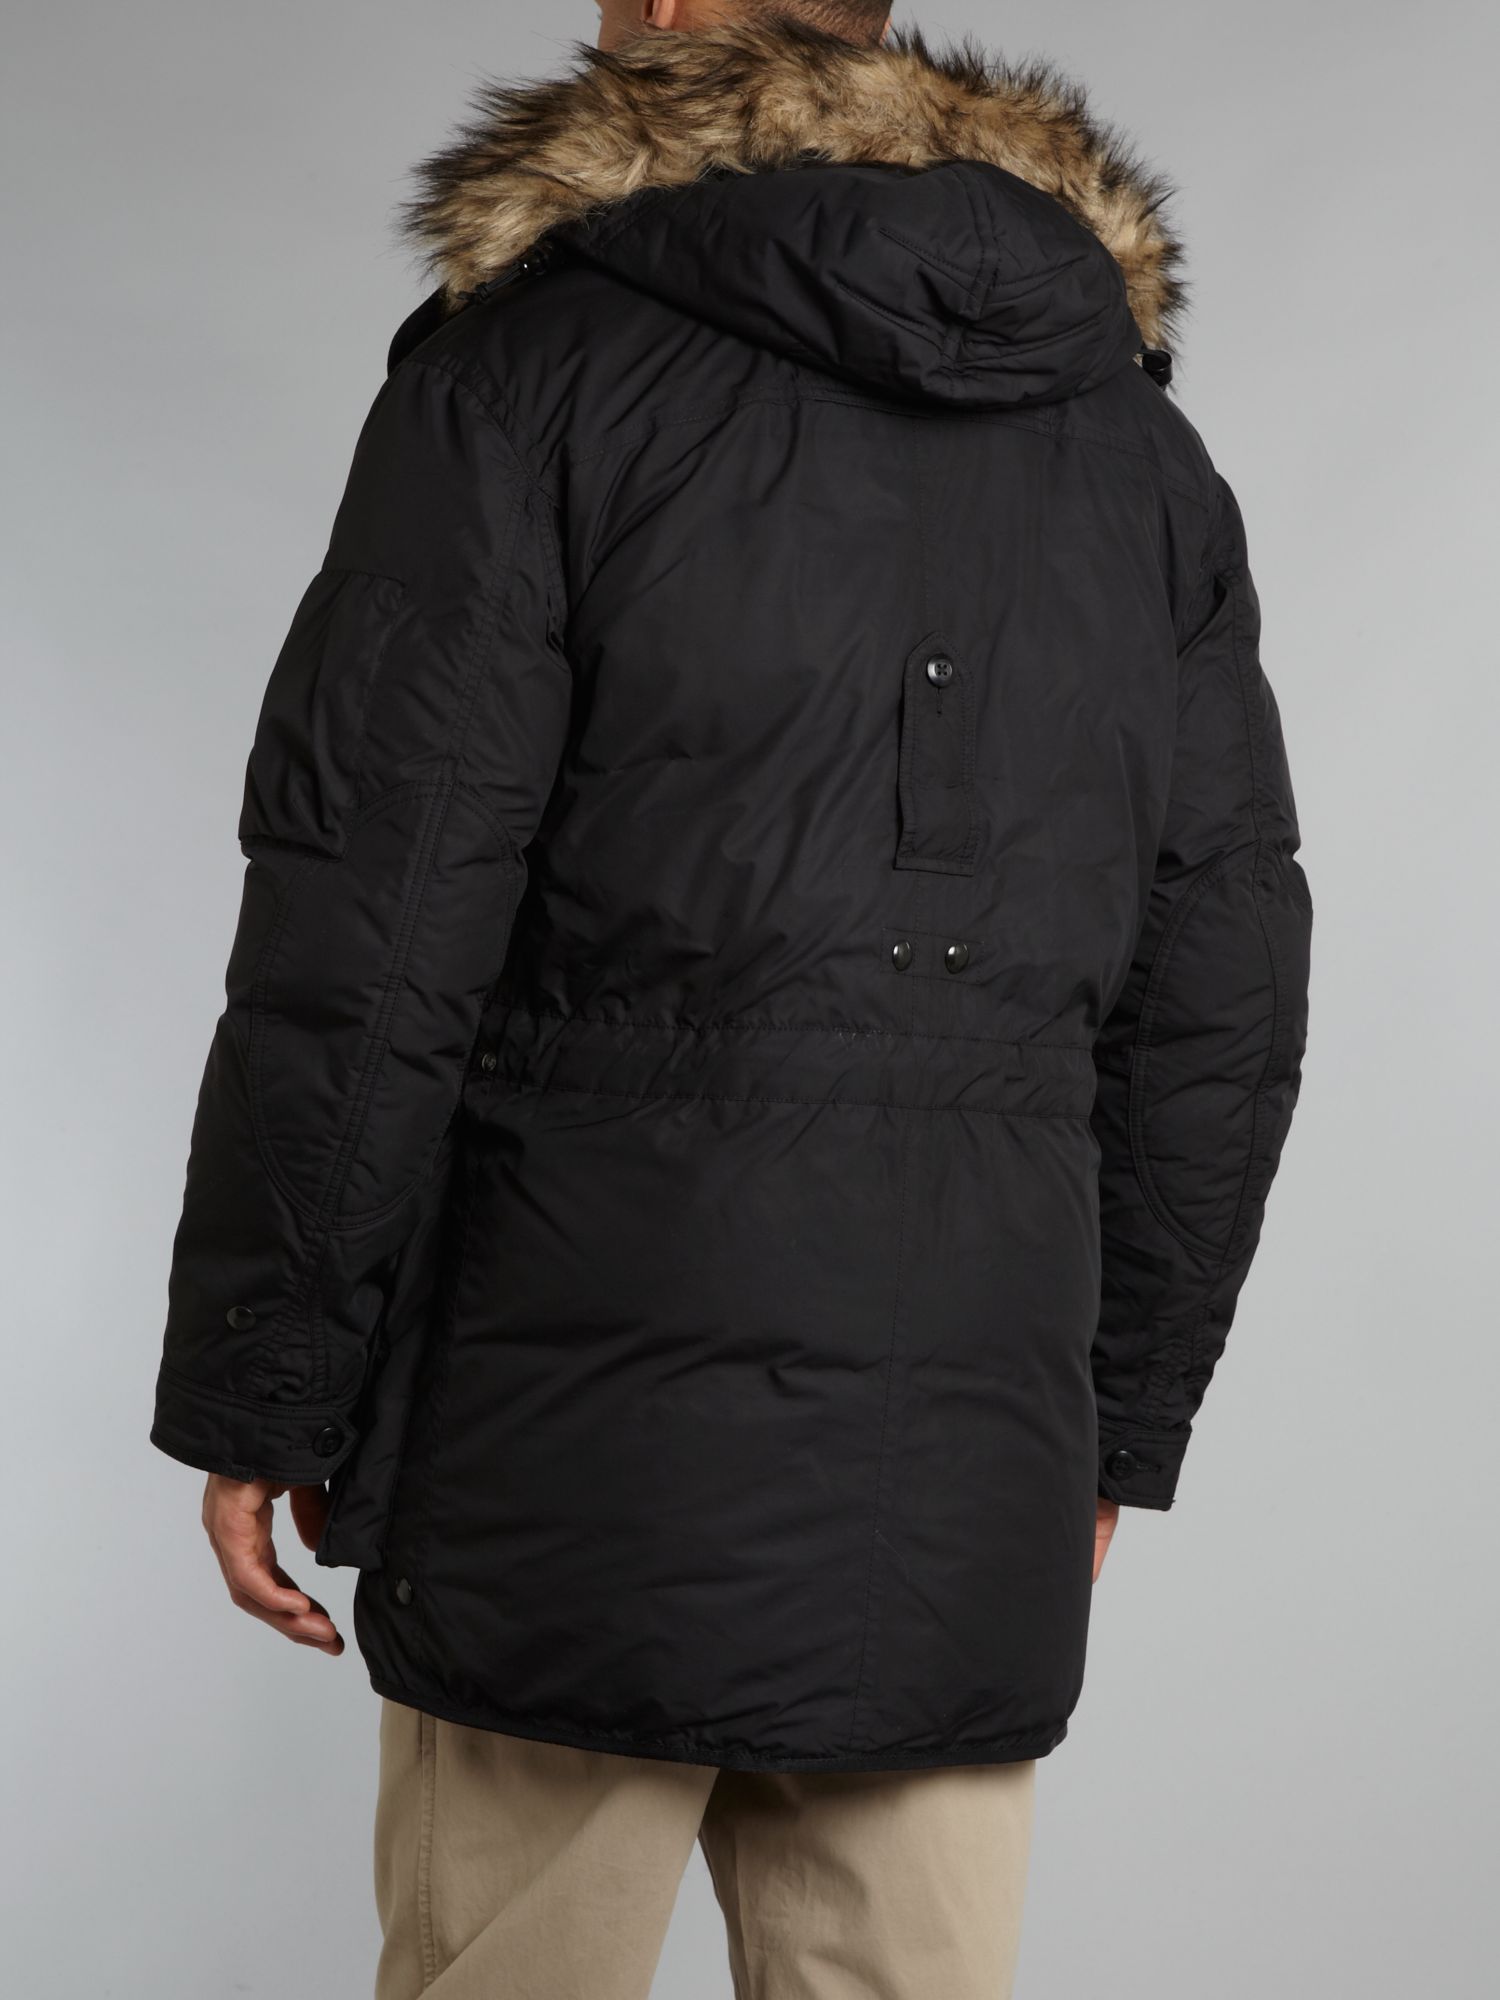 Polo ralph lauren Faux Fur Trim Parka Jacket in Black for Men | Lyst